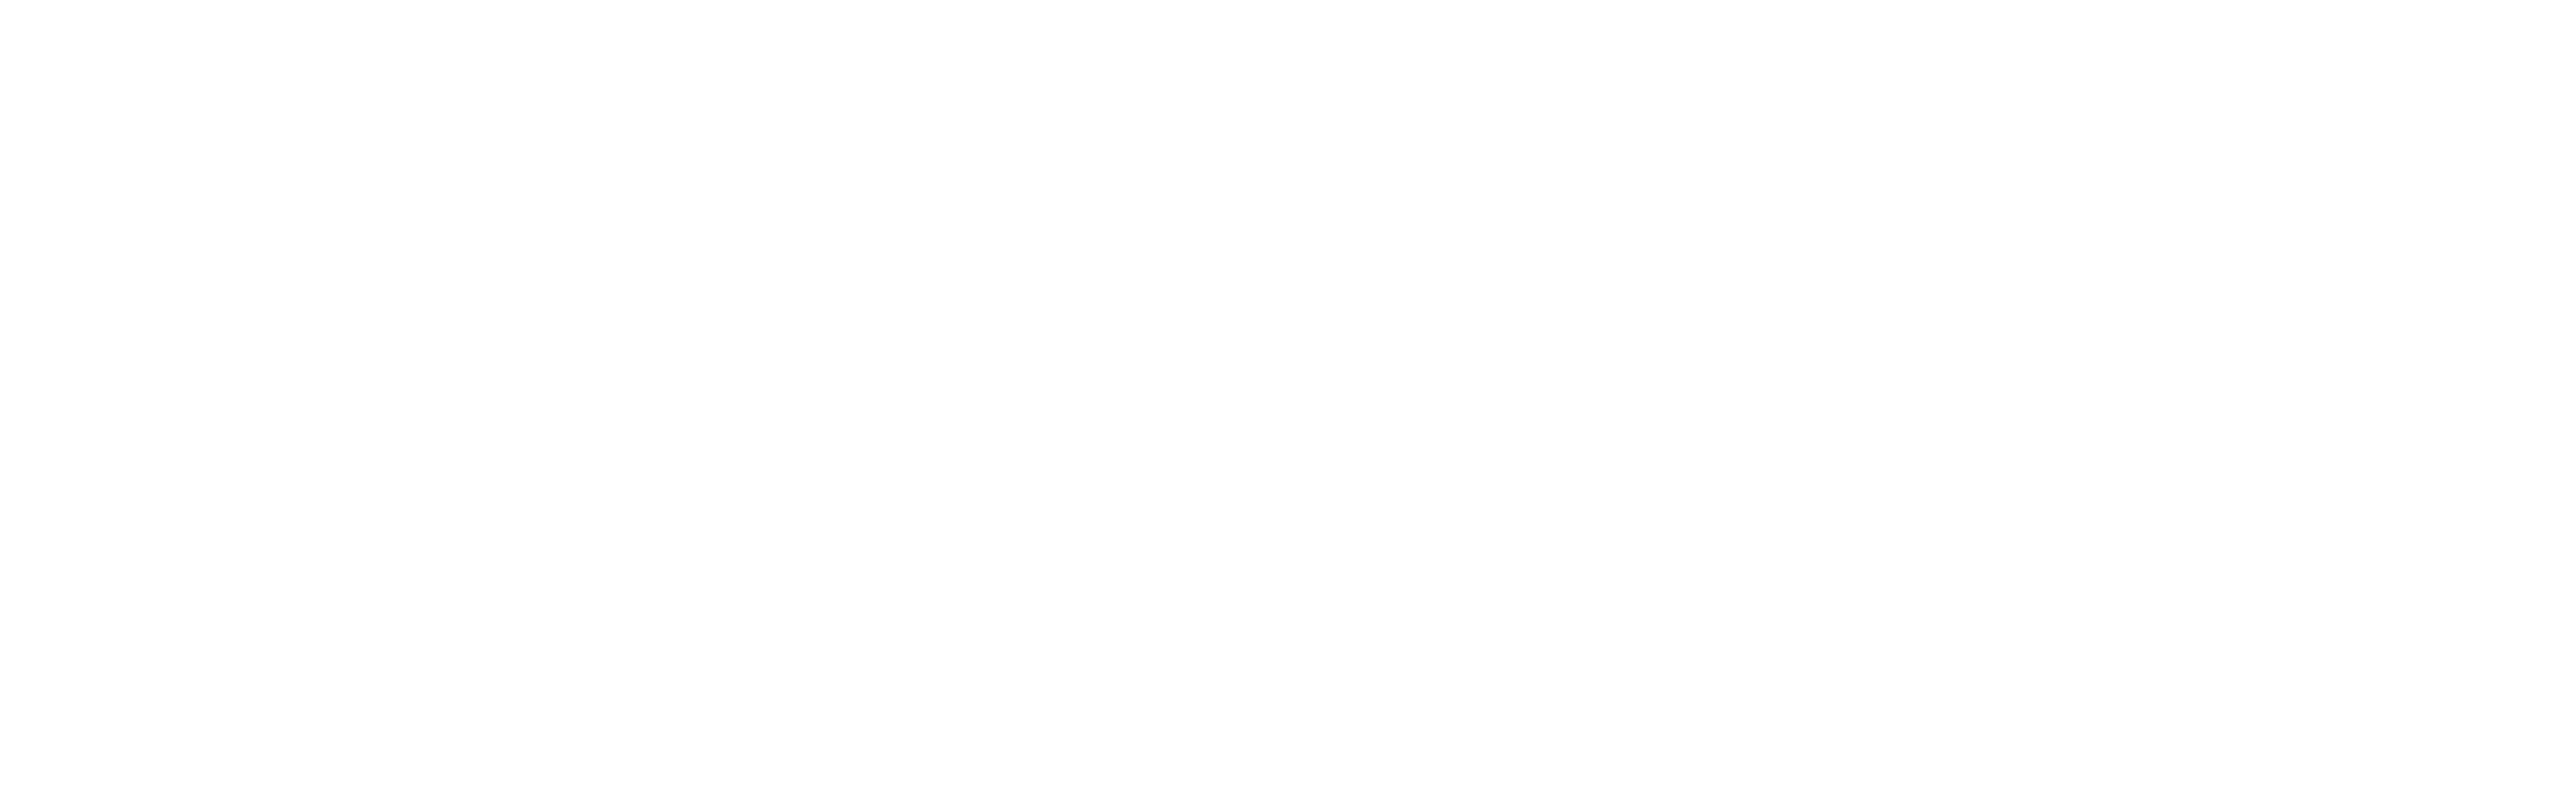 GPG Associati - Comunicazione D'impresa | Formazione Manageriale